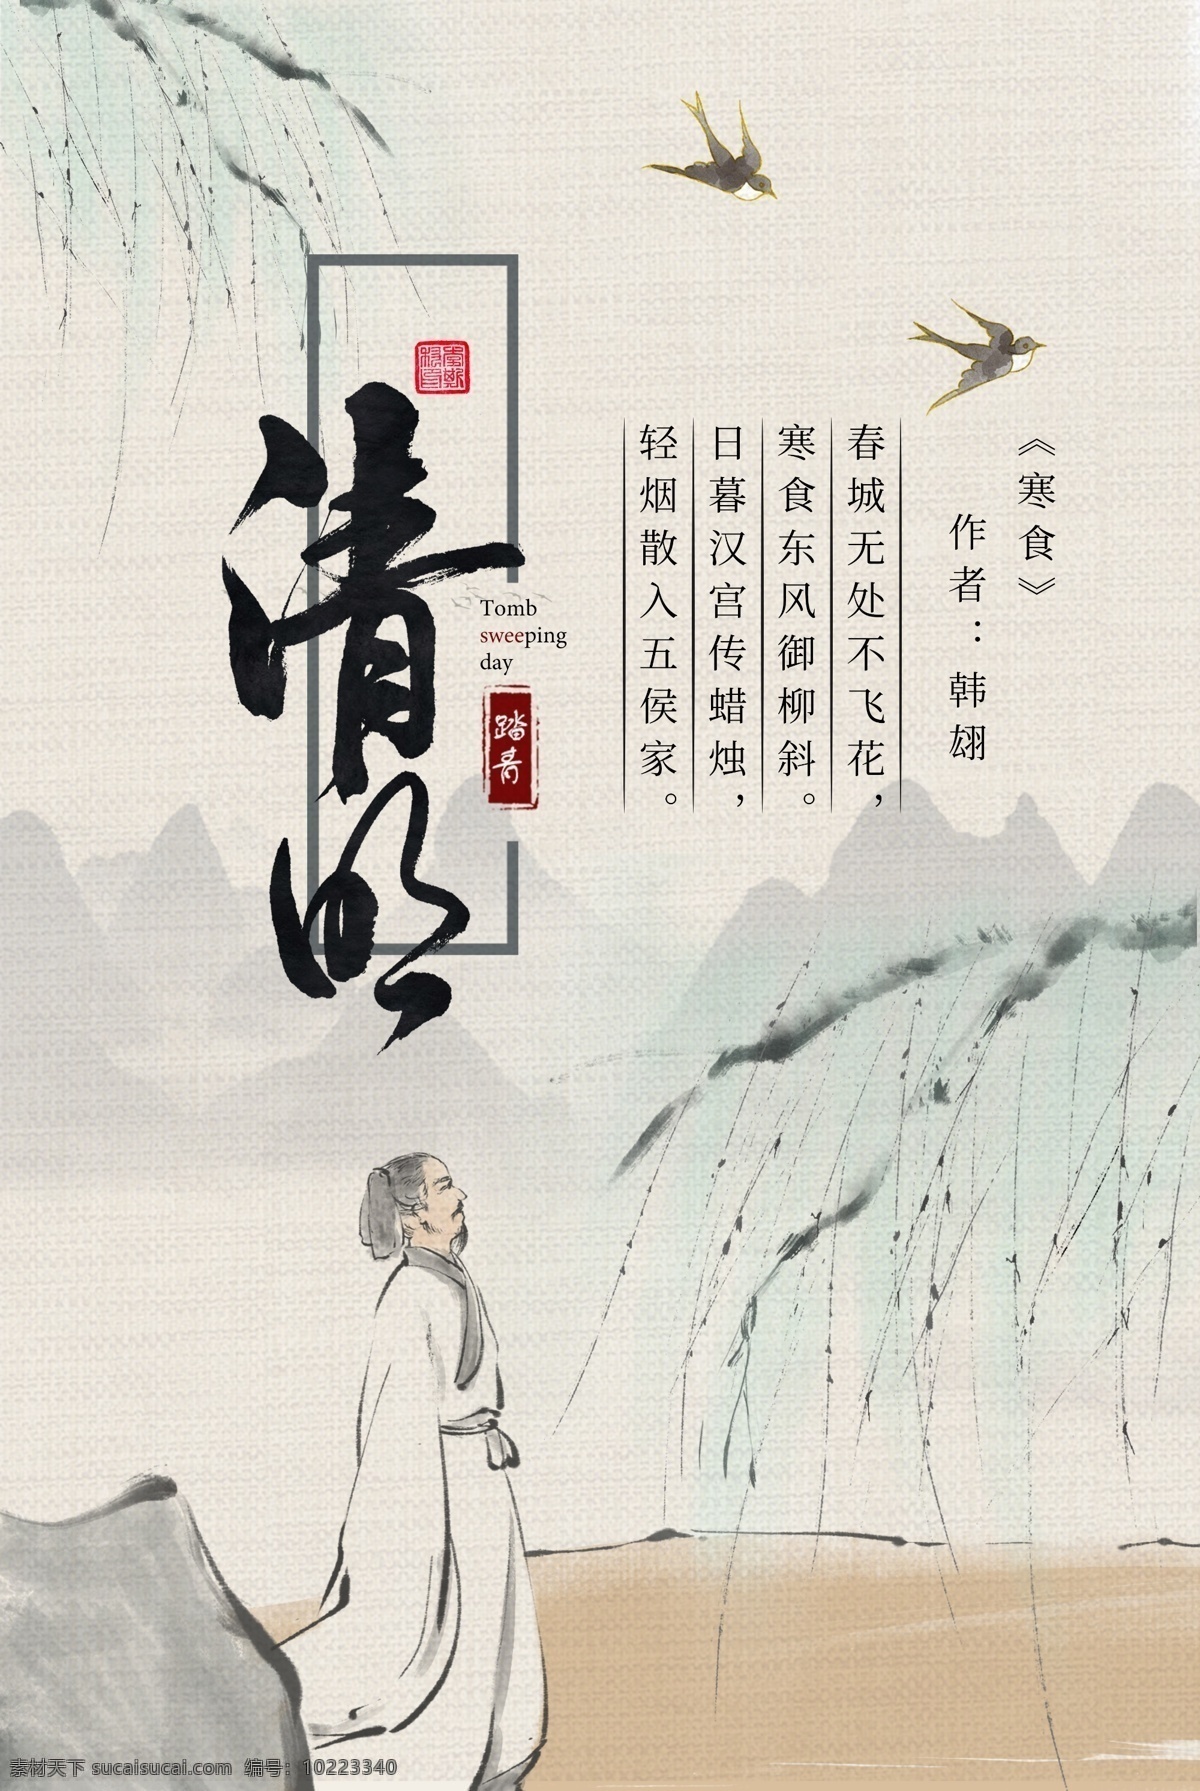 中国 传统节日 清明节 海报 中国传统节日 清明 踏青 扫墓 中国风 简约 节气 4月5月